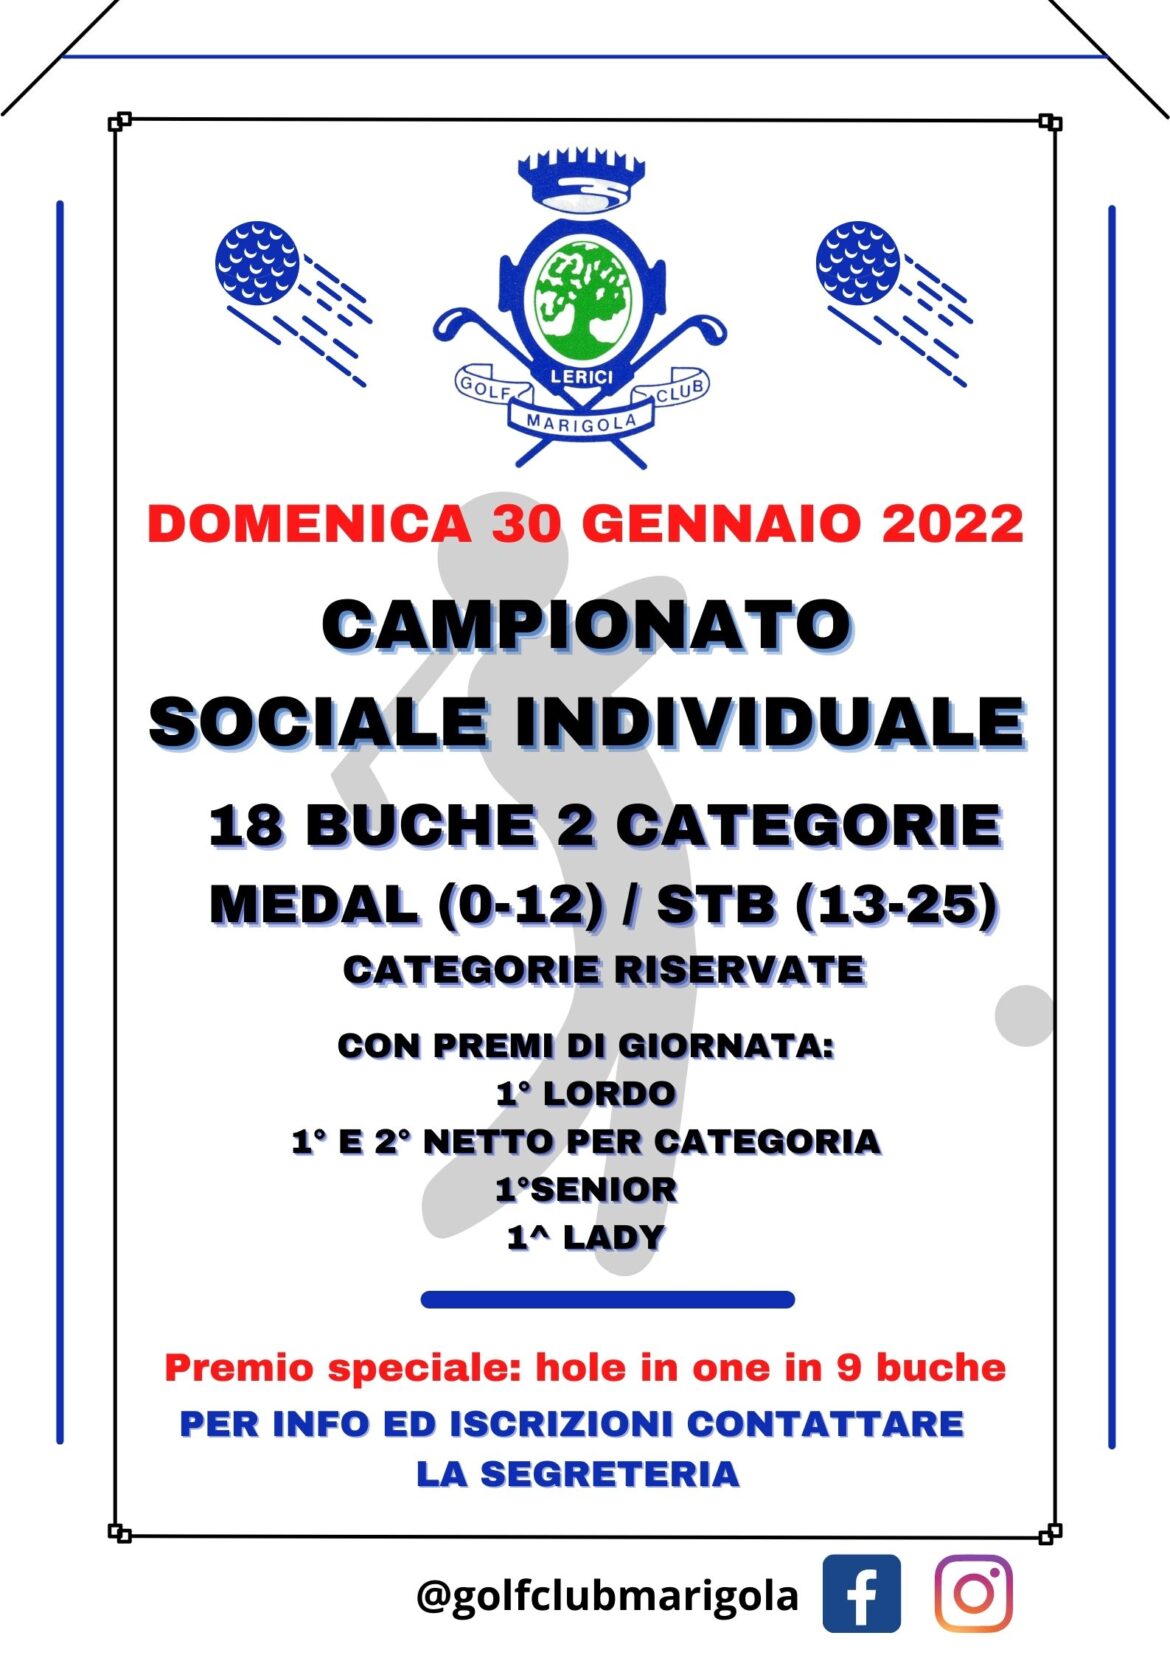 CAMPIONATO SOCIALE INDIVIDUALE – domenica 30 gennaio 2022